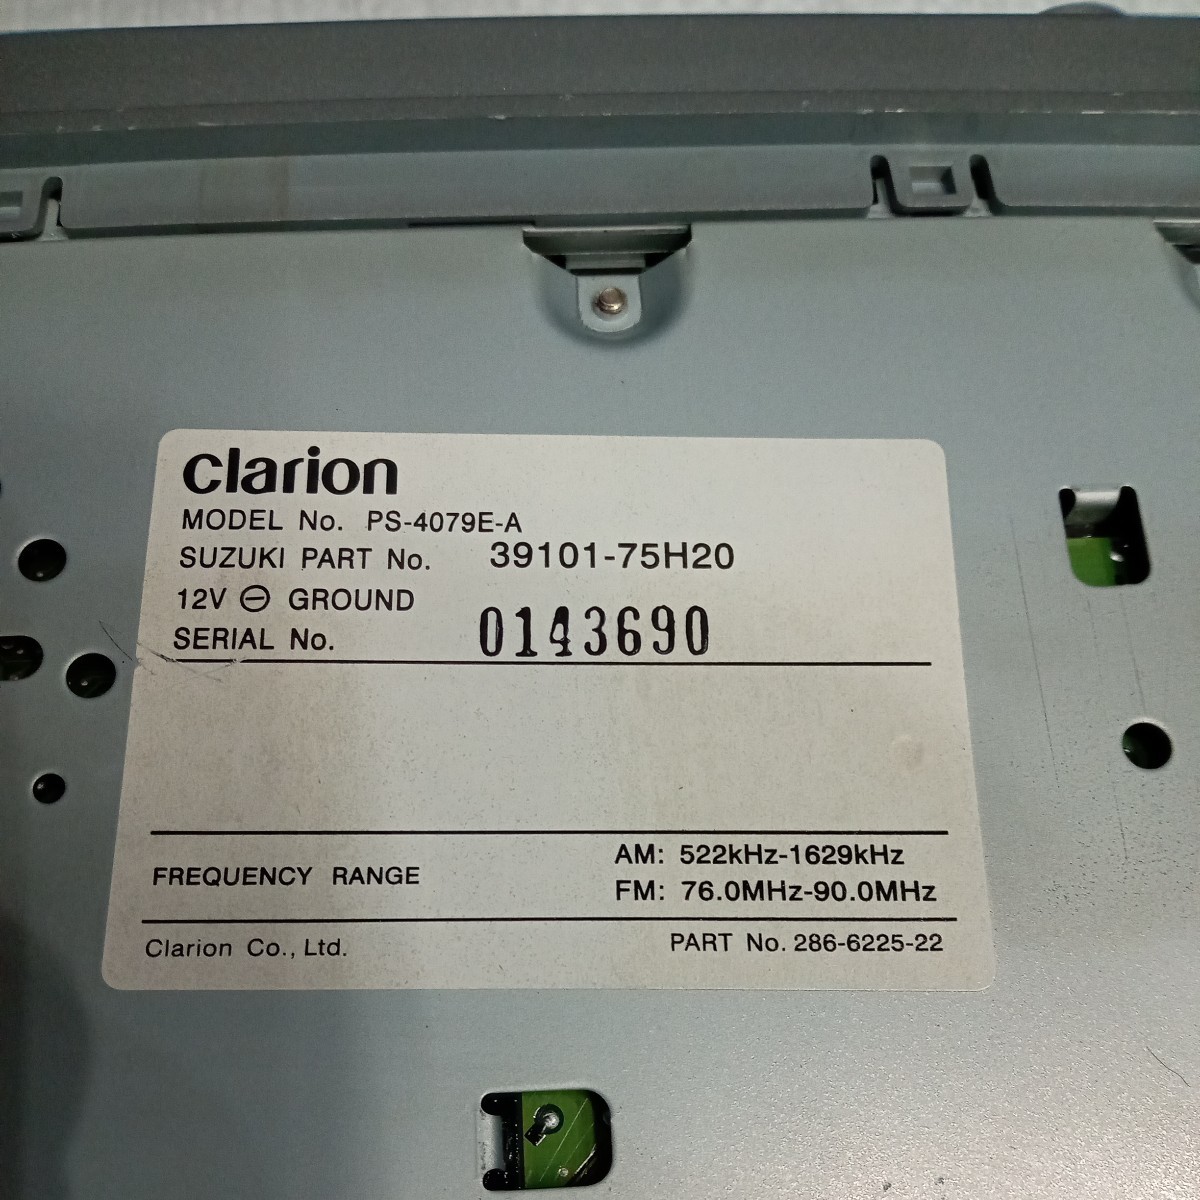  Suzuki SUZUKI Clarion Clarion PS-4079E-A 39101-75H20 работоспособность не проверялась Junk 